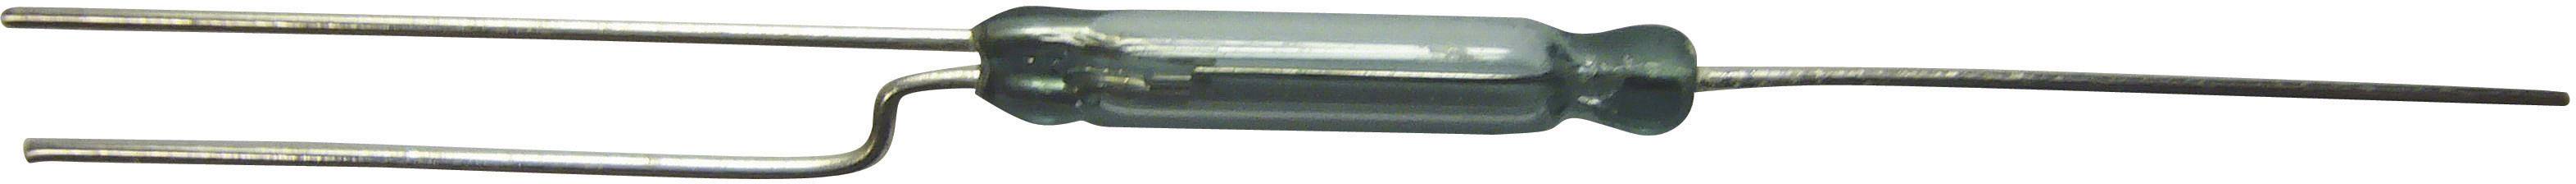 Comus GC 1925 Reed-Kontakt 1 Wechsler 140 V//AC 1 A 60 W Glaskolbenlänge:36 6070